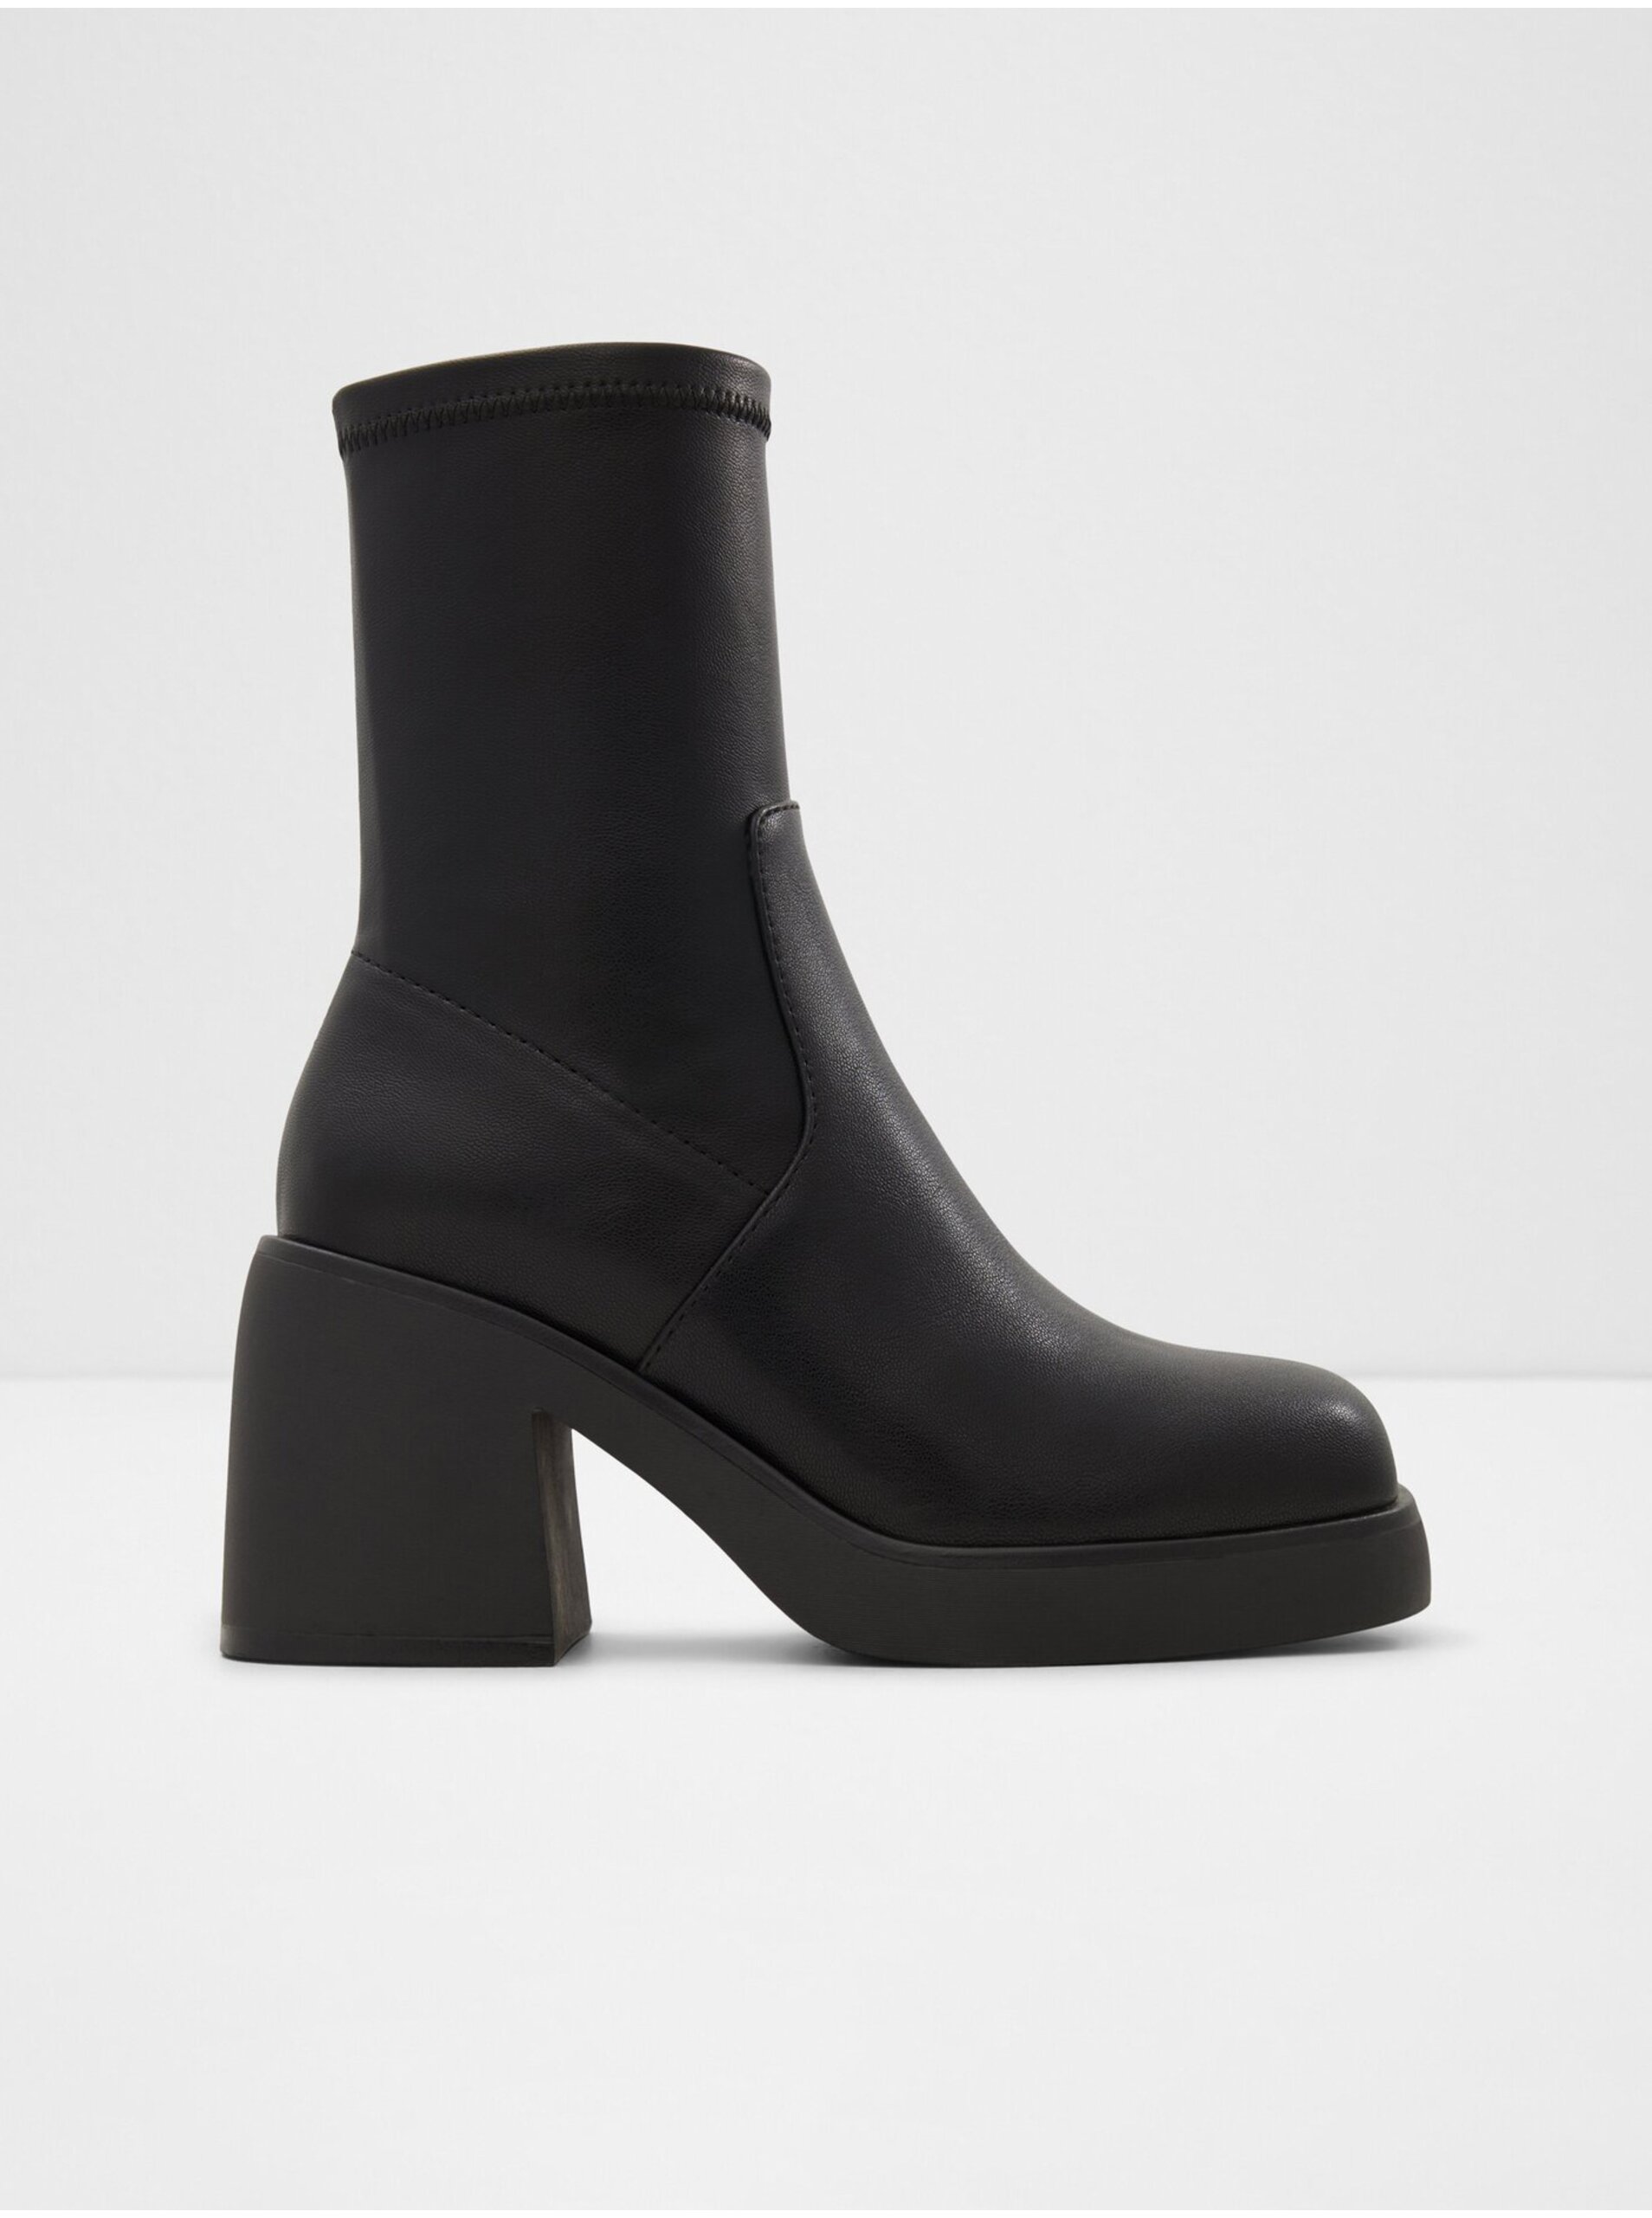 E-shop Černé dámské kotníkové boty na podpatku ALDO Persona